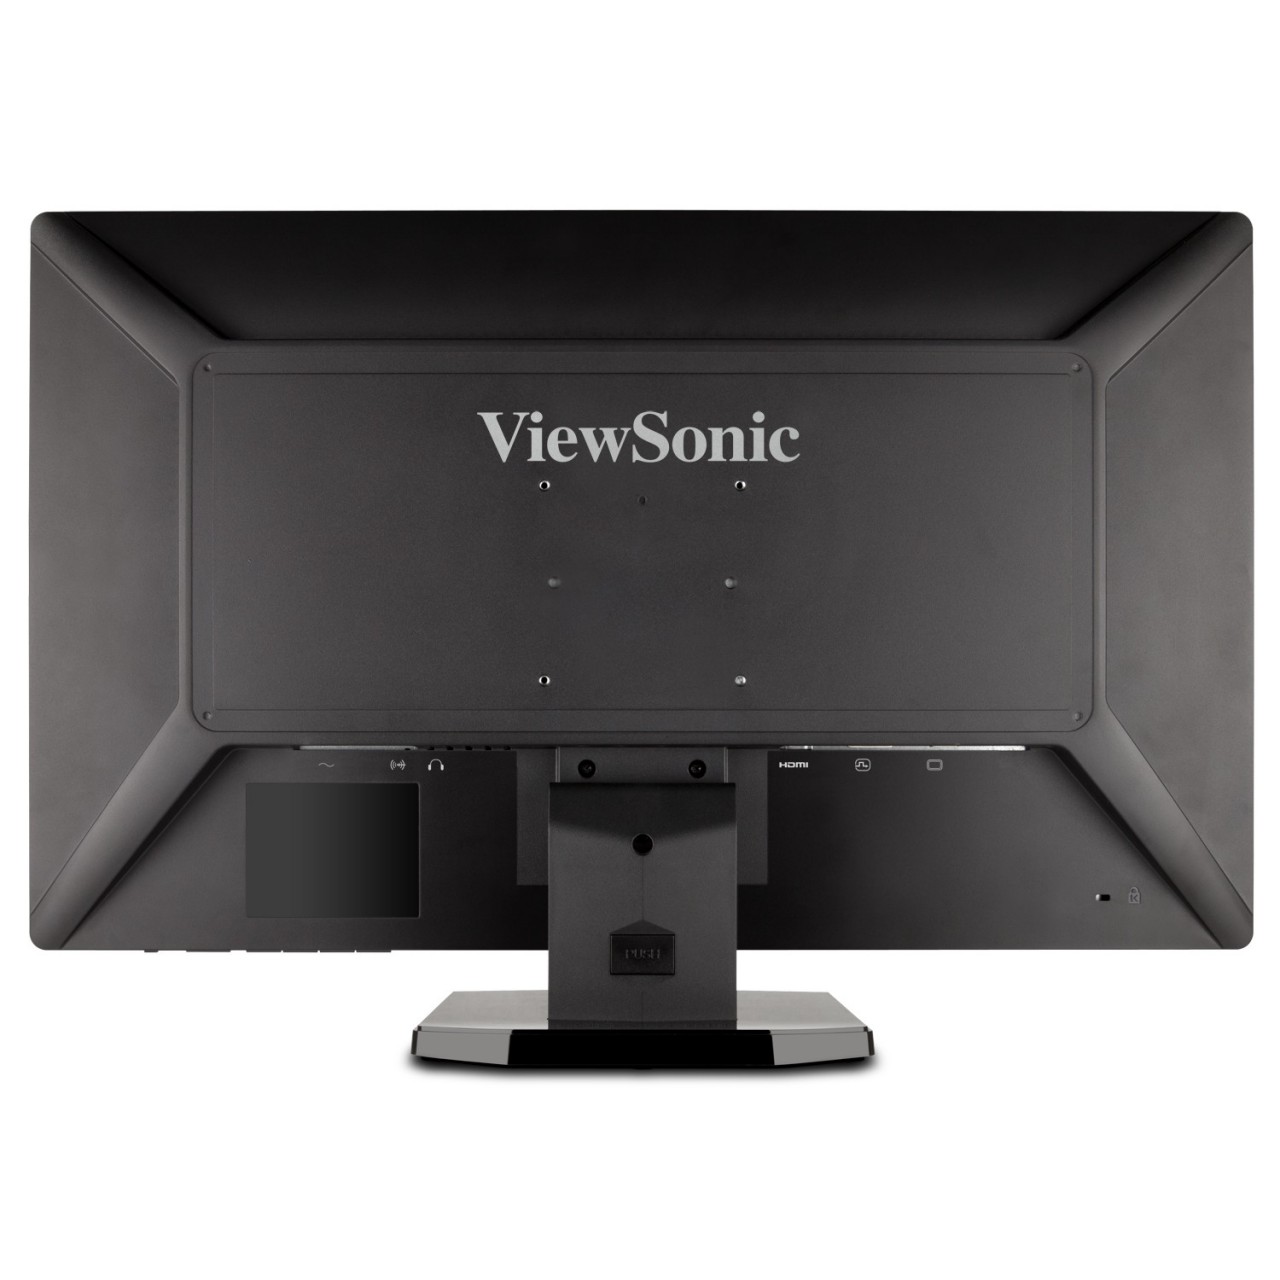 ViewSonic VX2703MH-LED